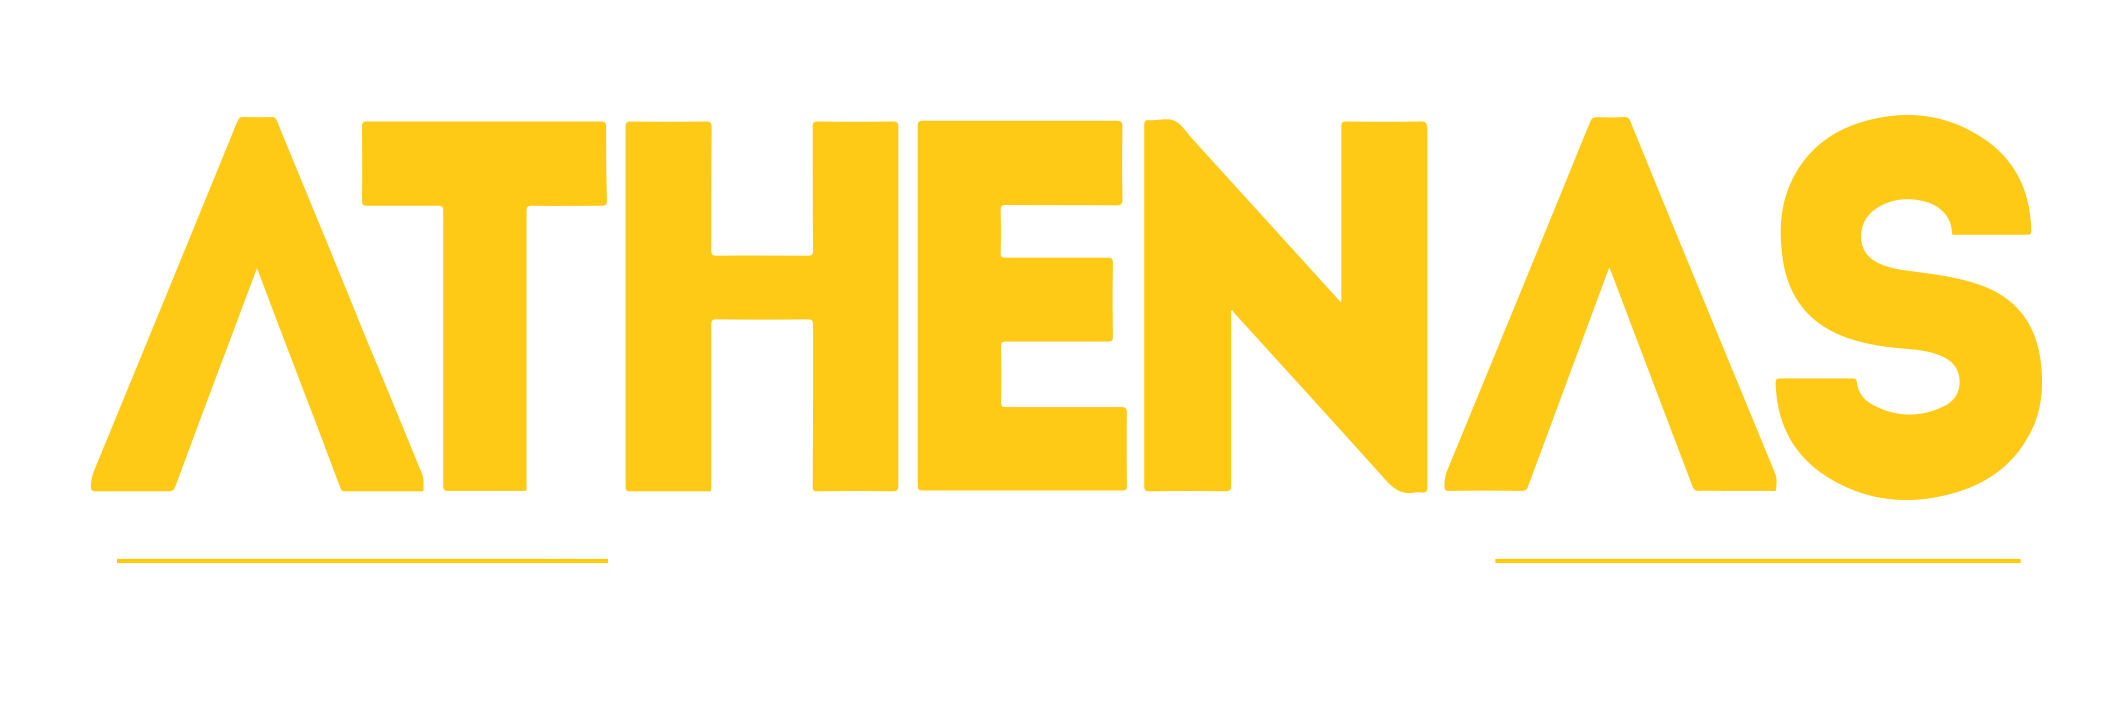 athenas logo.png